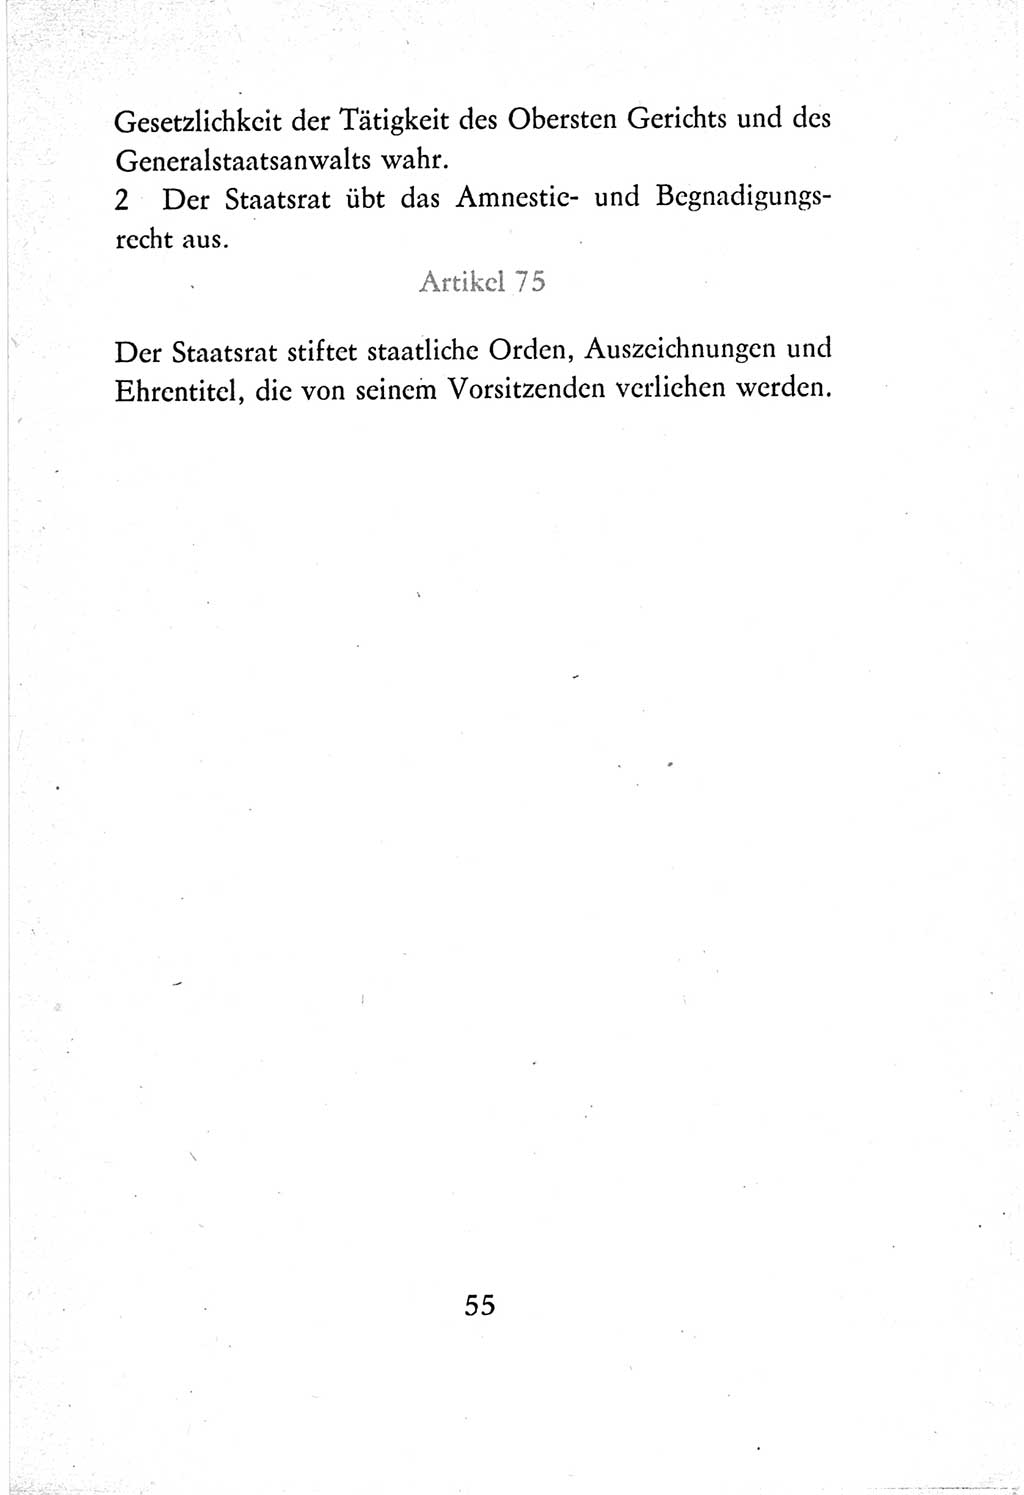 Verfassung der Deutschen Demokratischen Republik (DDR) vom 7. Oktober 1974, Seite 55 (Verf. DDR 1974, S. 55)